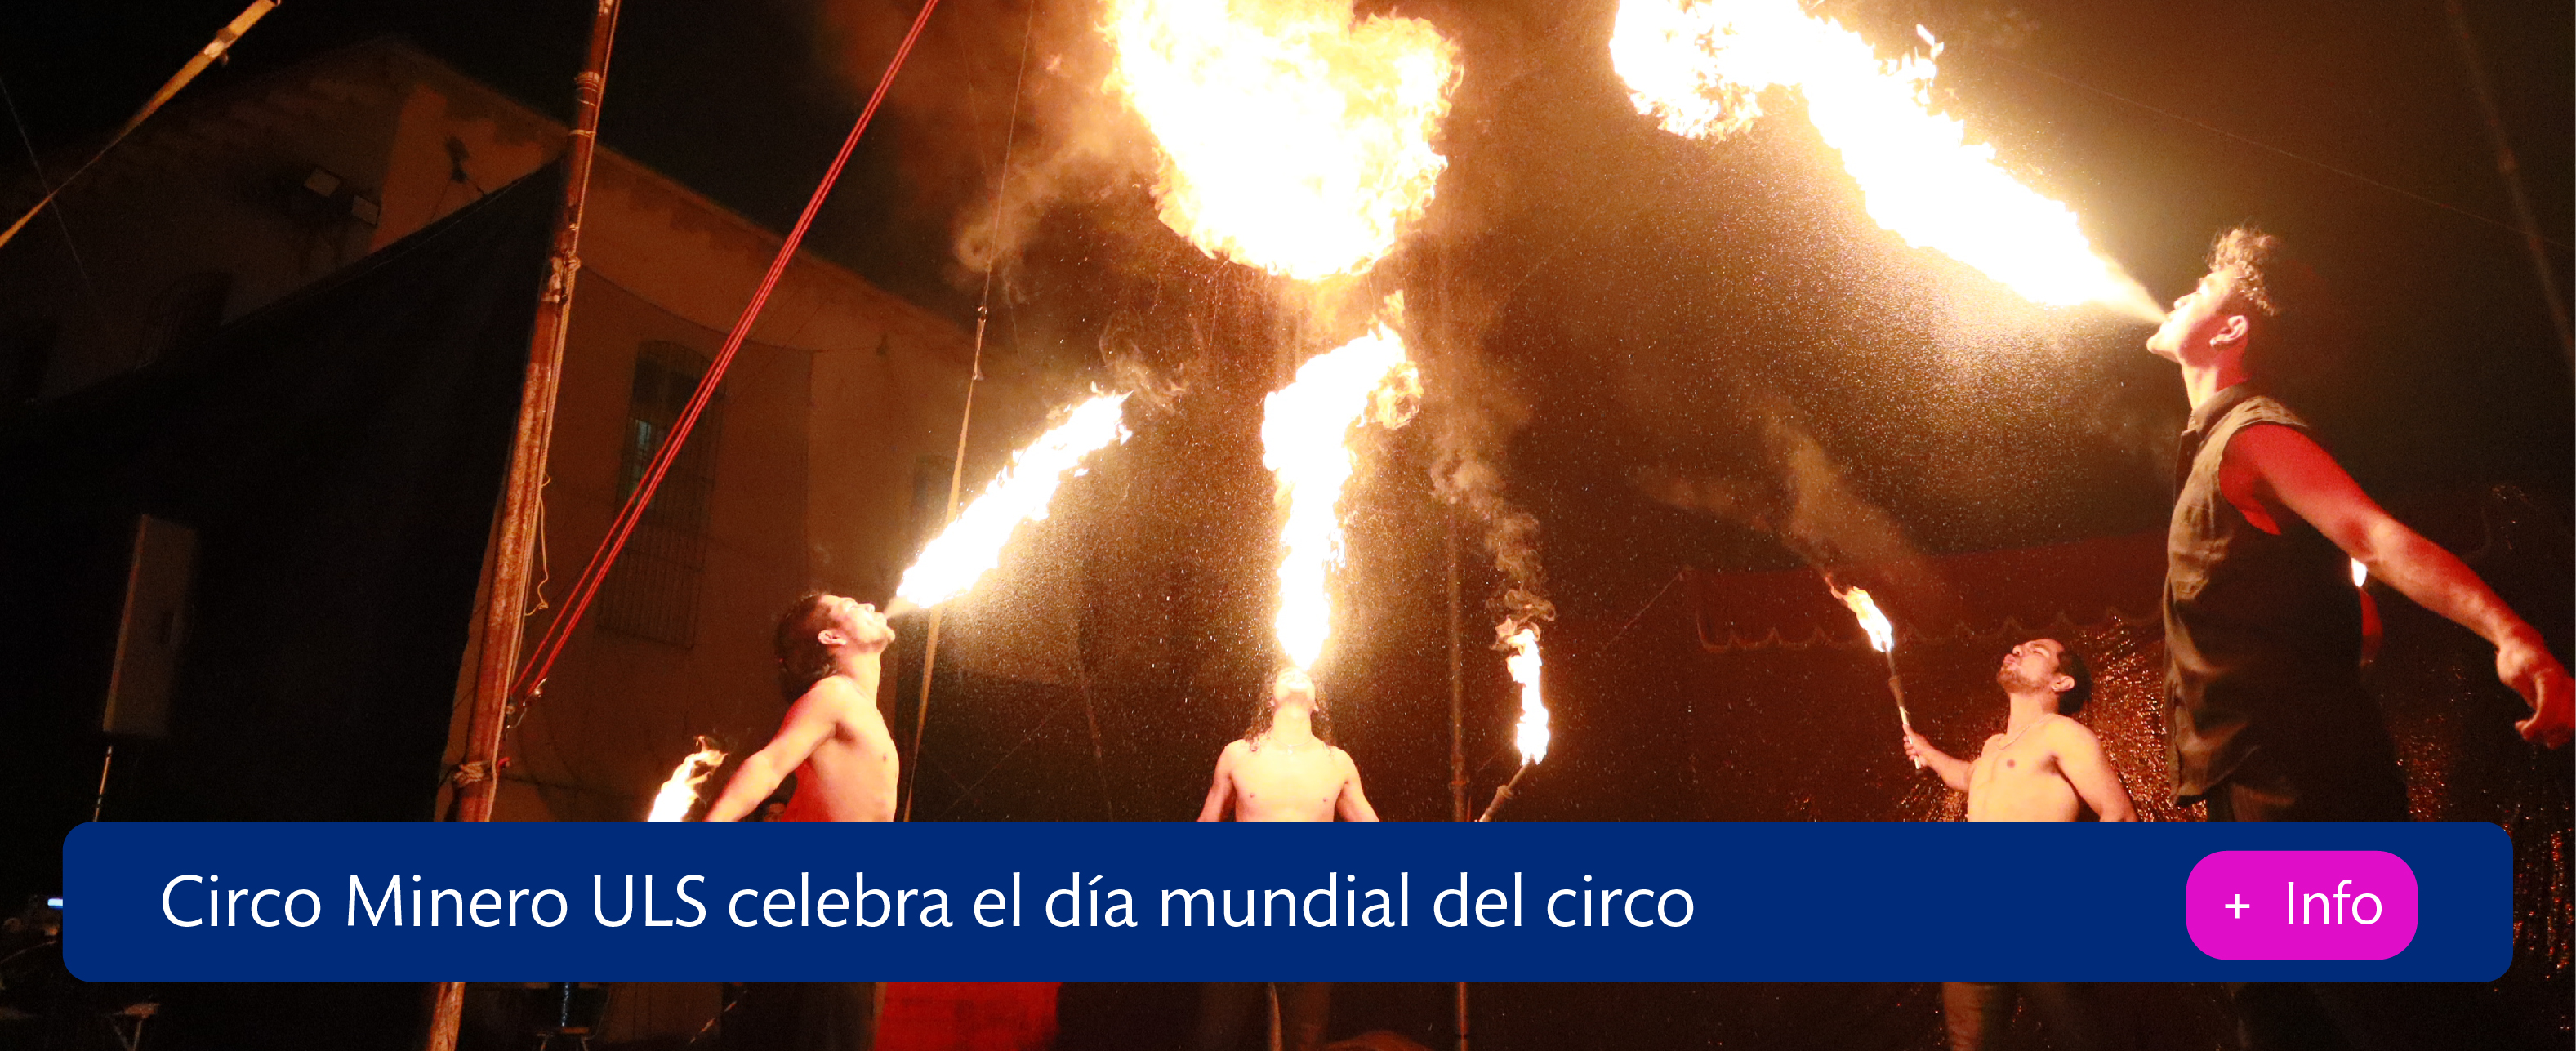 Circo Minero celebra día del circo